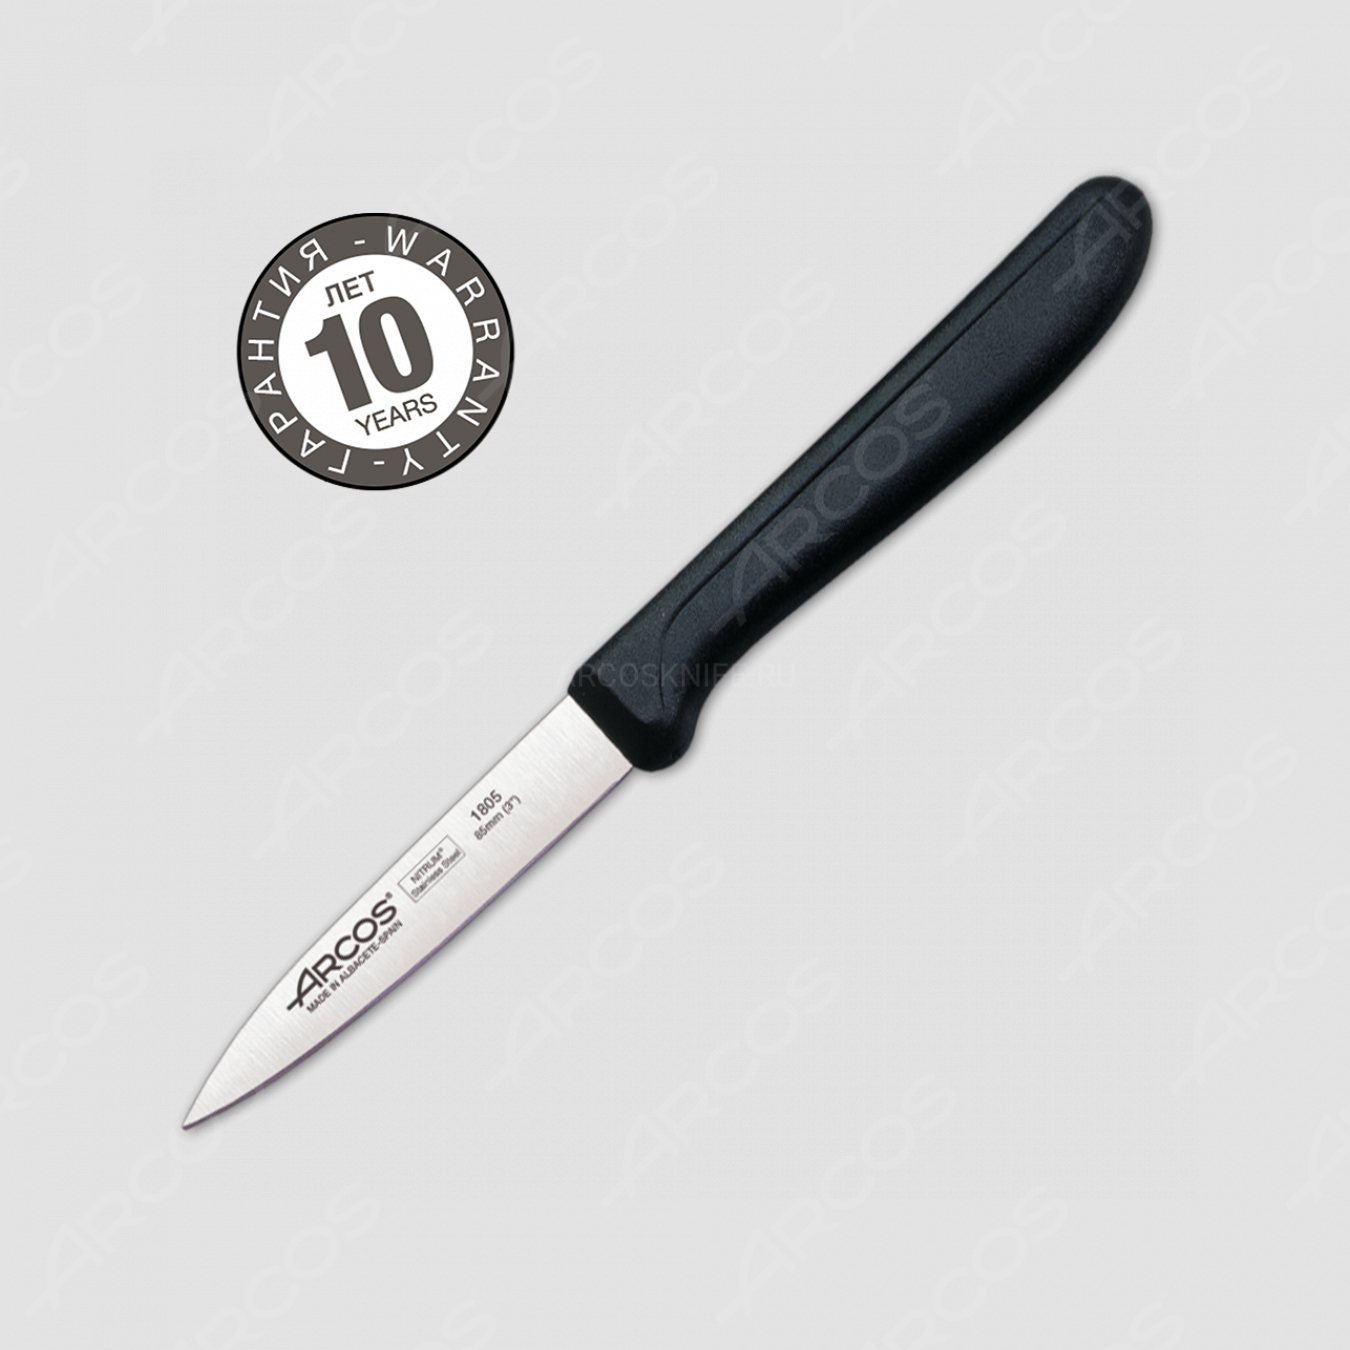 Нож кухонный для чистки 8,5 см, рукоять черная, серия Genova, ARCOS, Испания